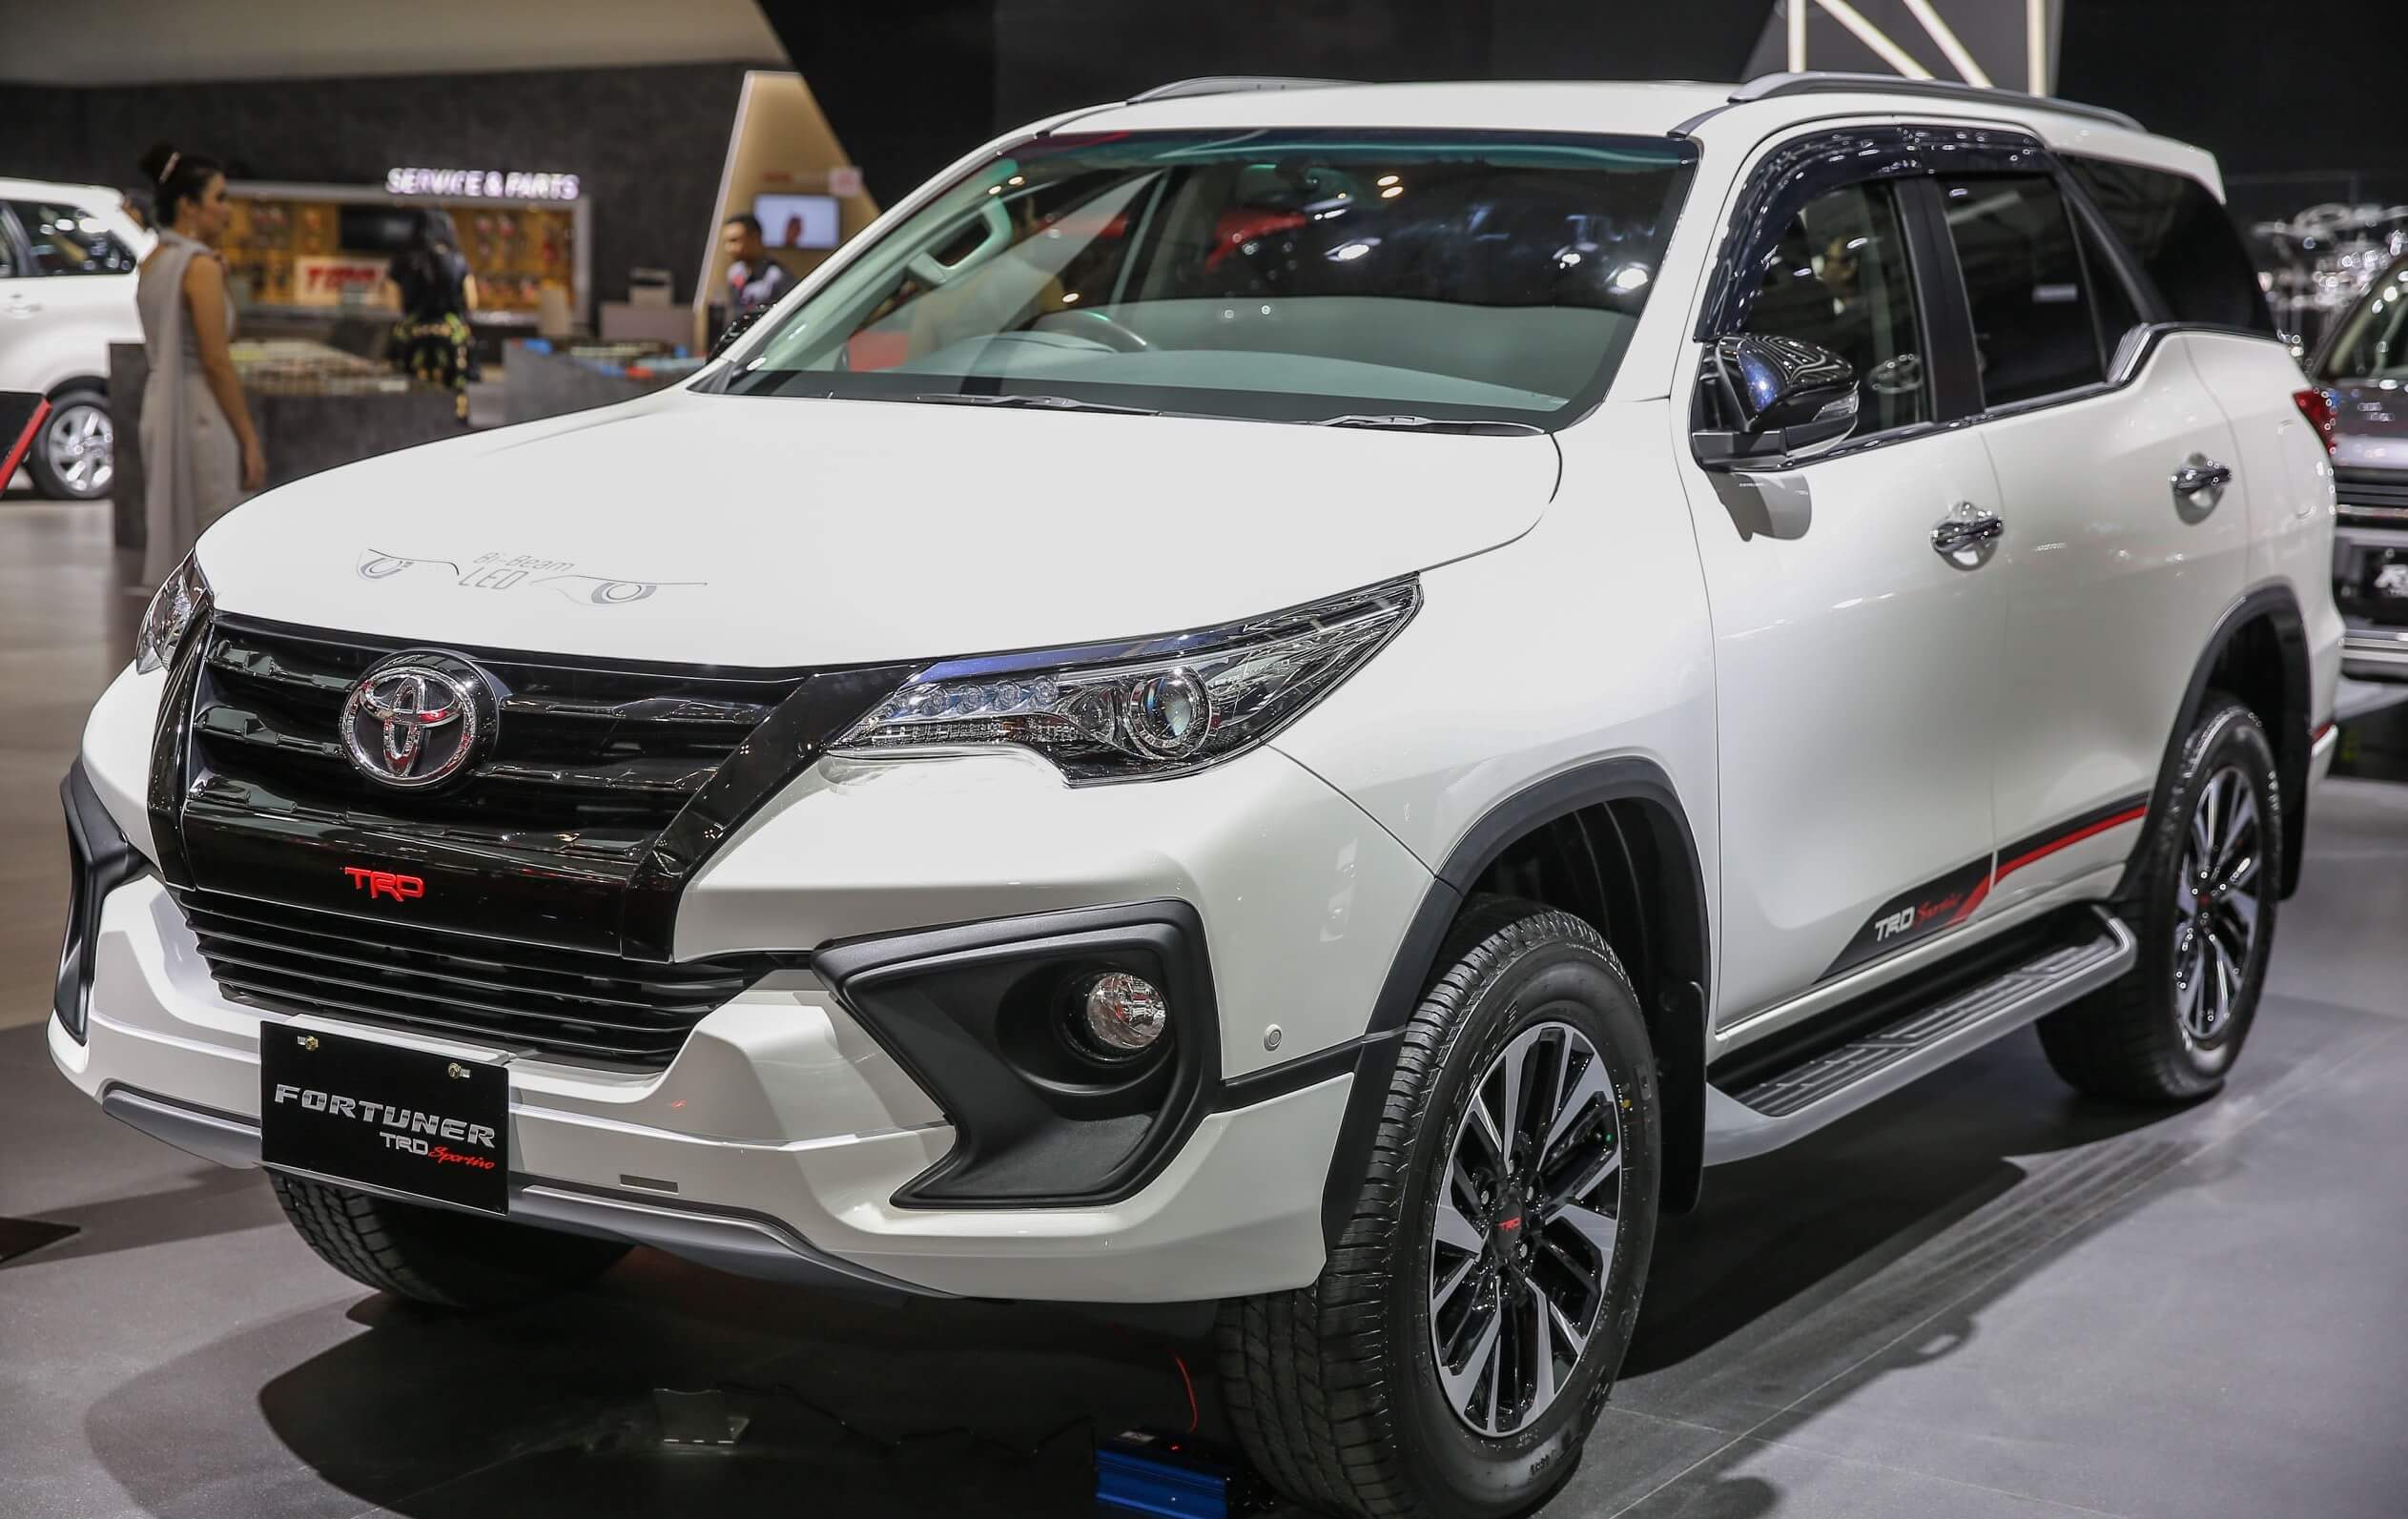  Modifikasi  Mobil  Toyota Fortuner  Baru 2021  Bowomodif